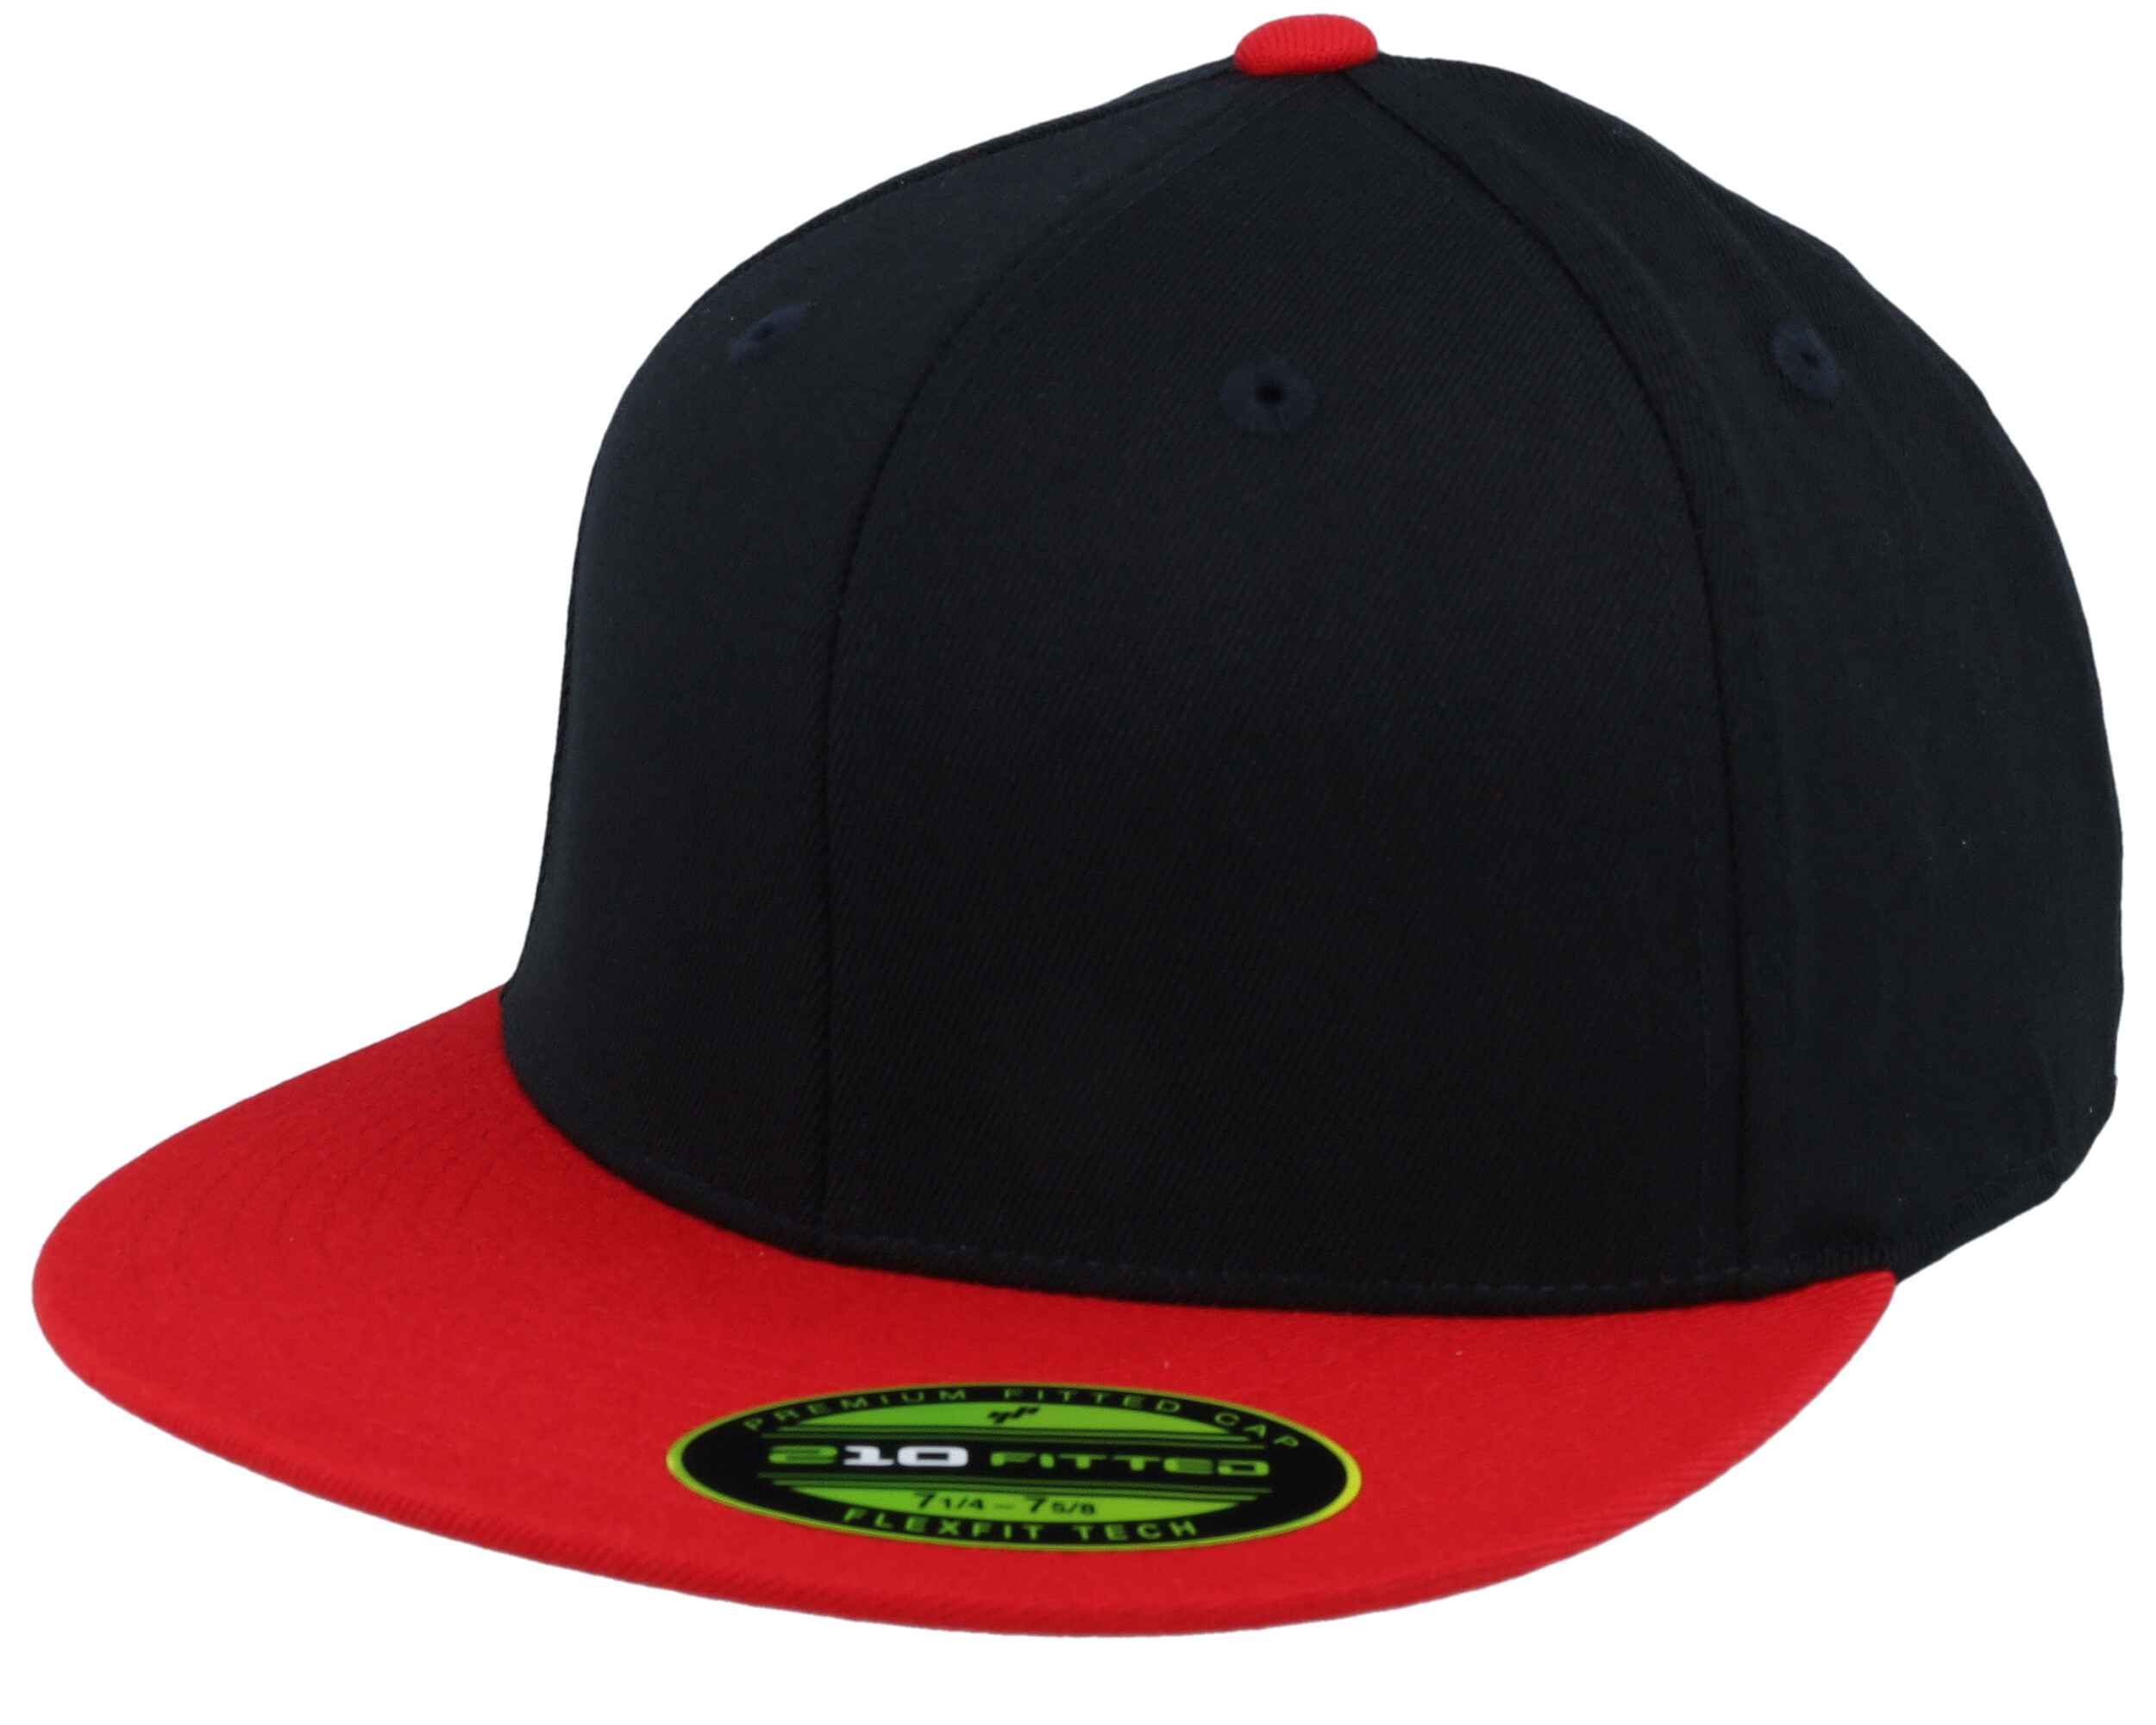 Premium 210 2-Tone Black/Red Fitted Flexfit cap 